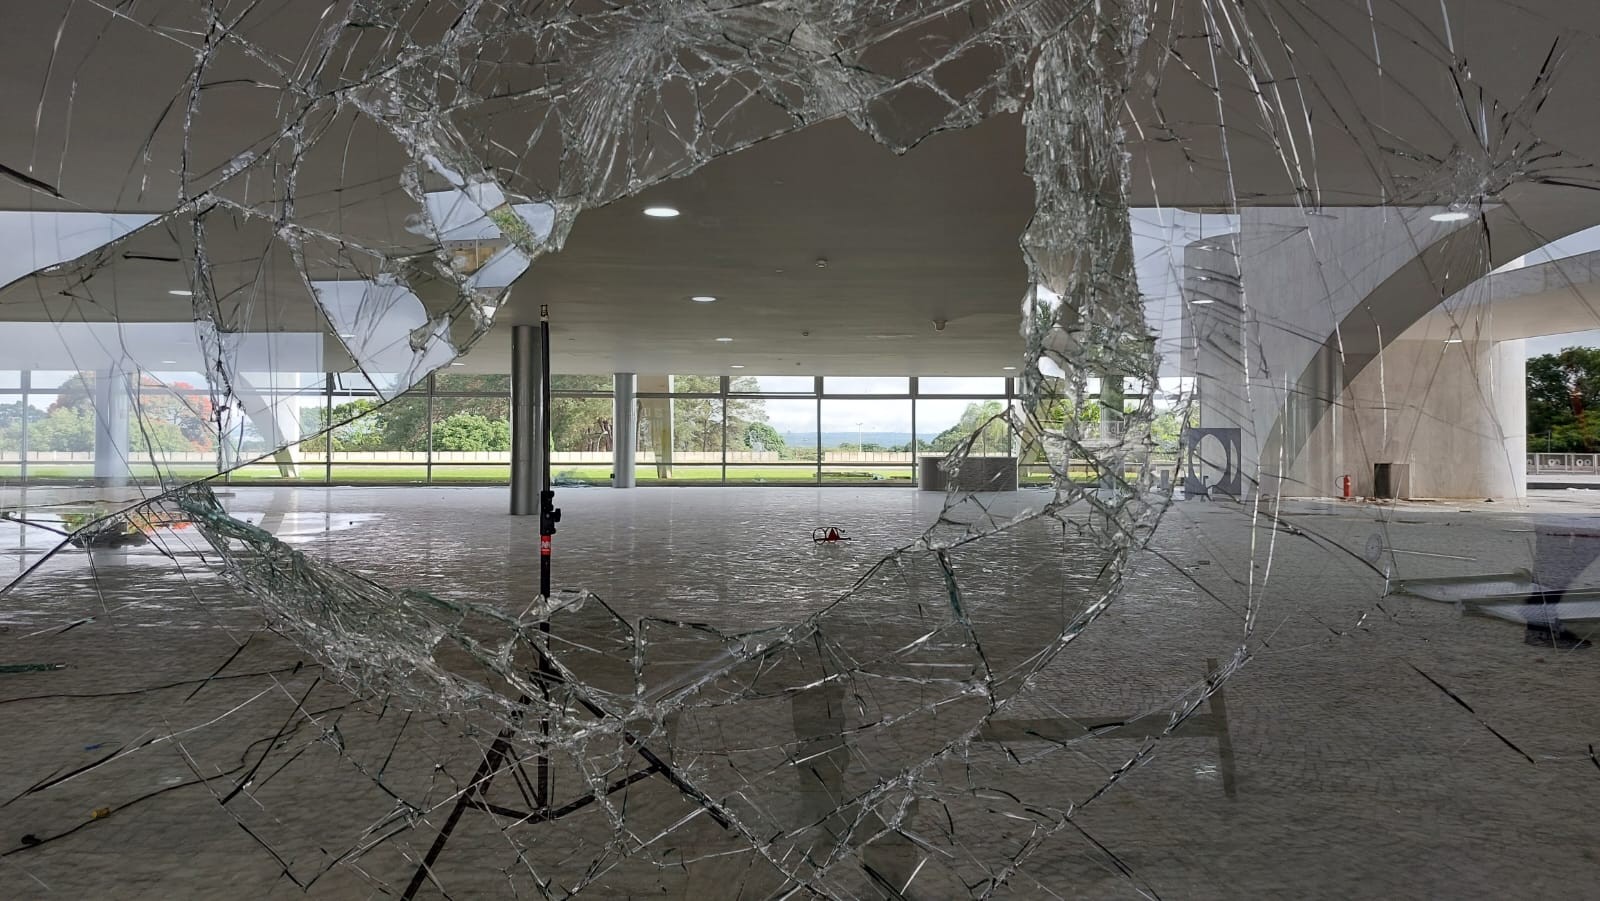 Vidros quebrados no Palácio do Planalto — Foto: Bruno Góes/Agência O Globo